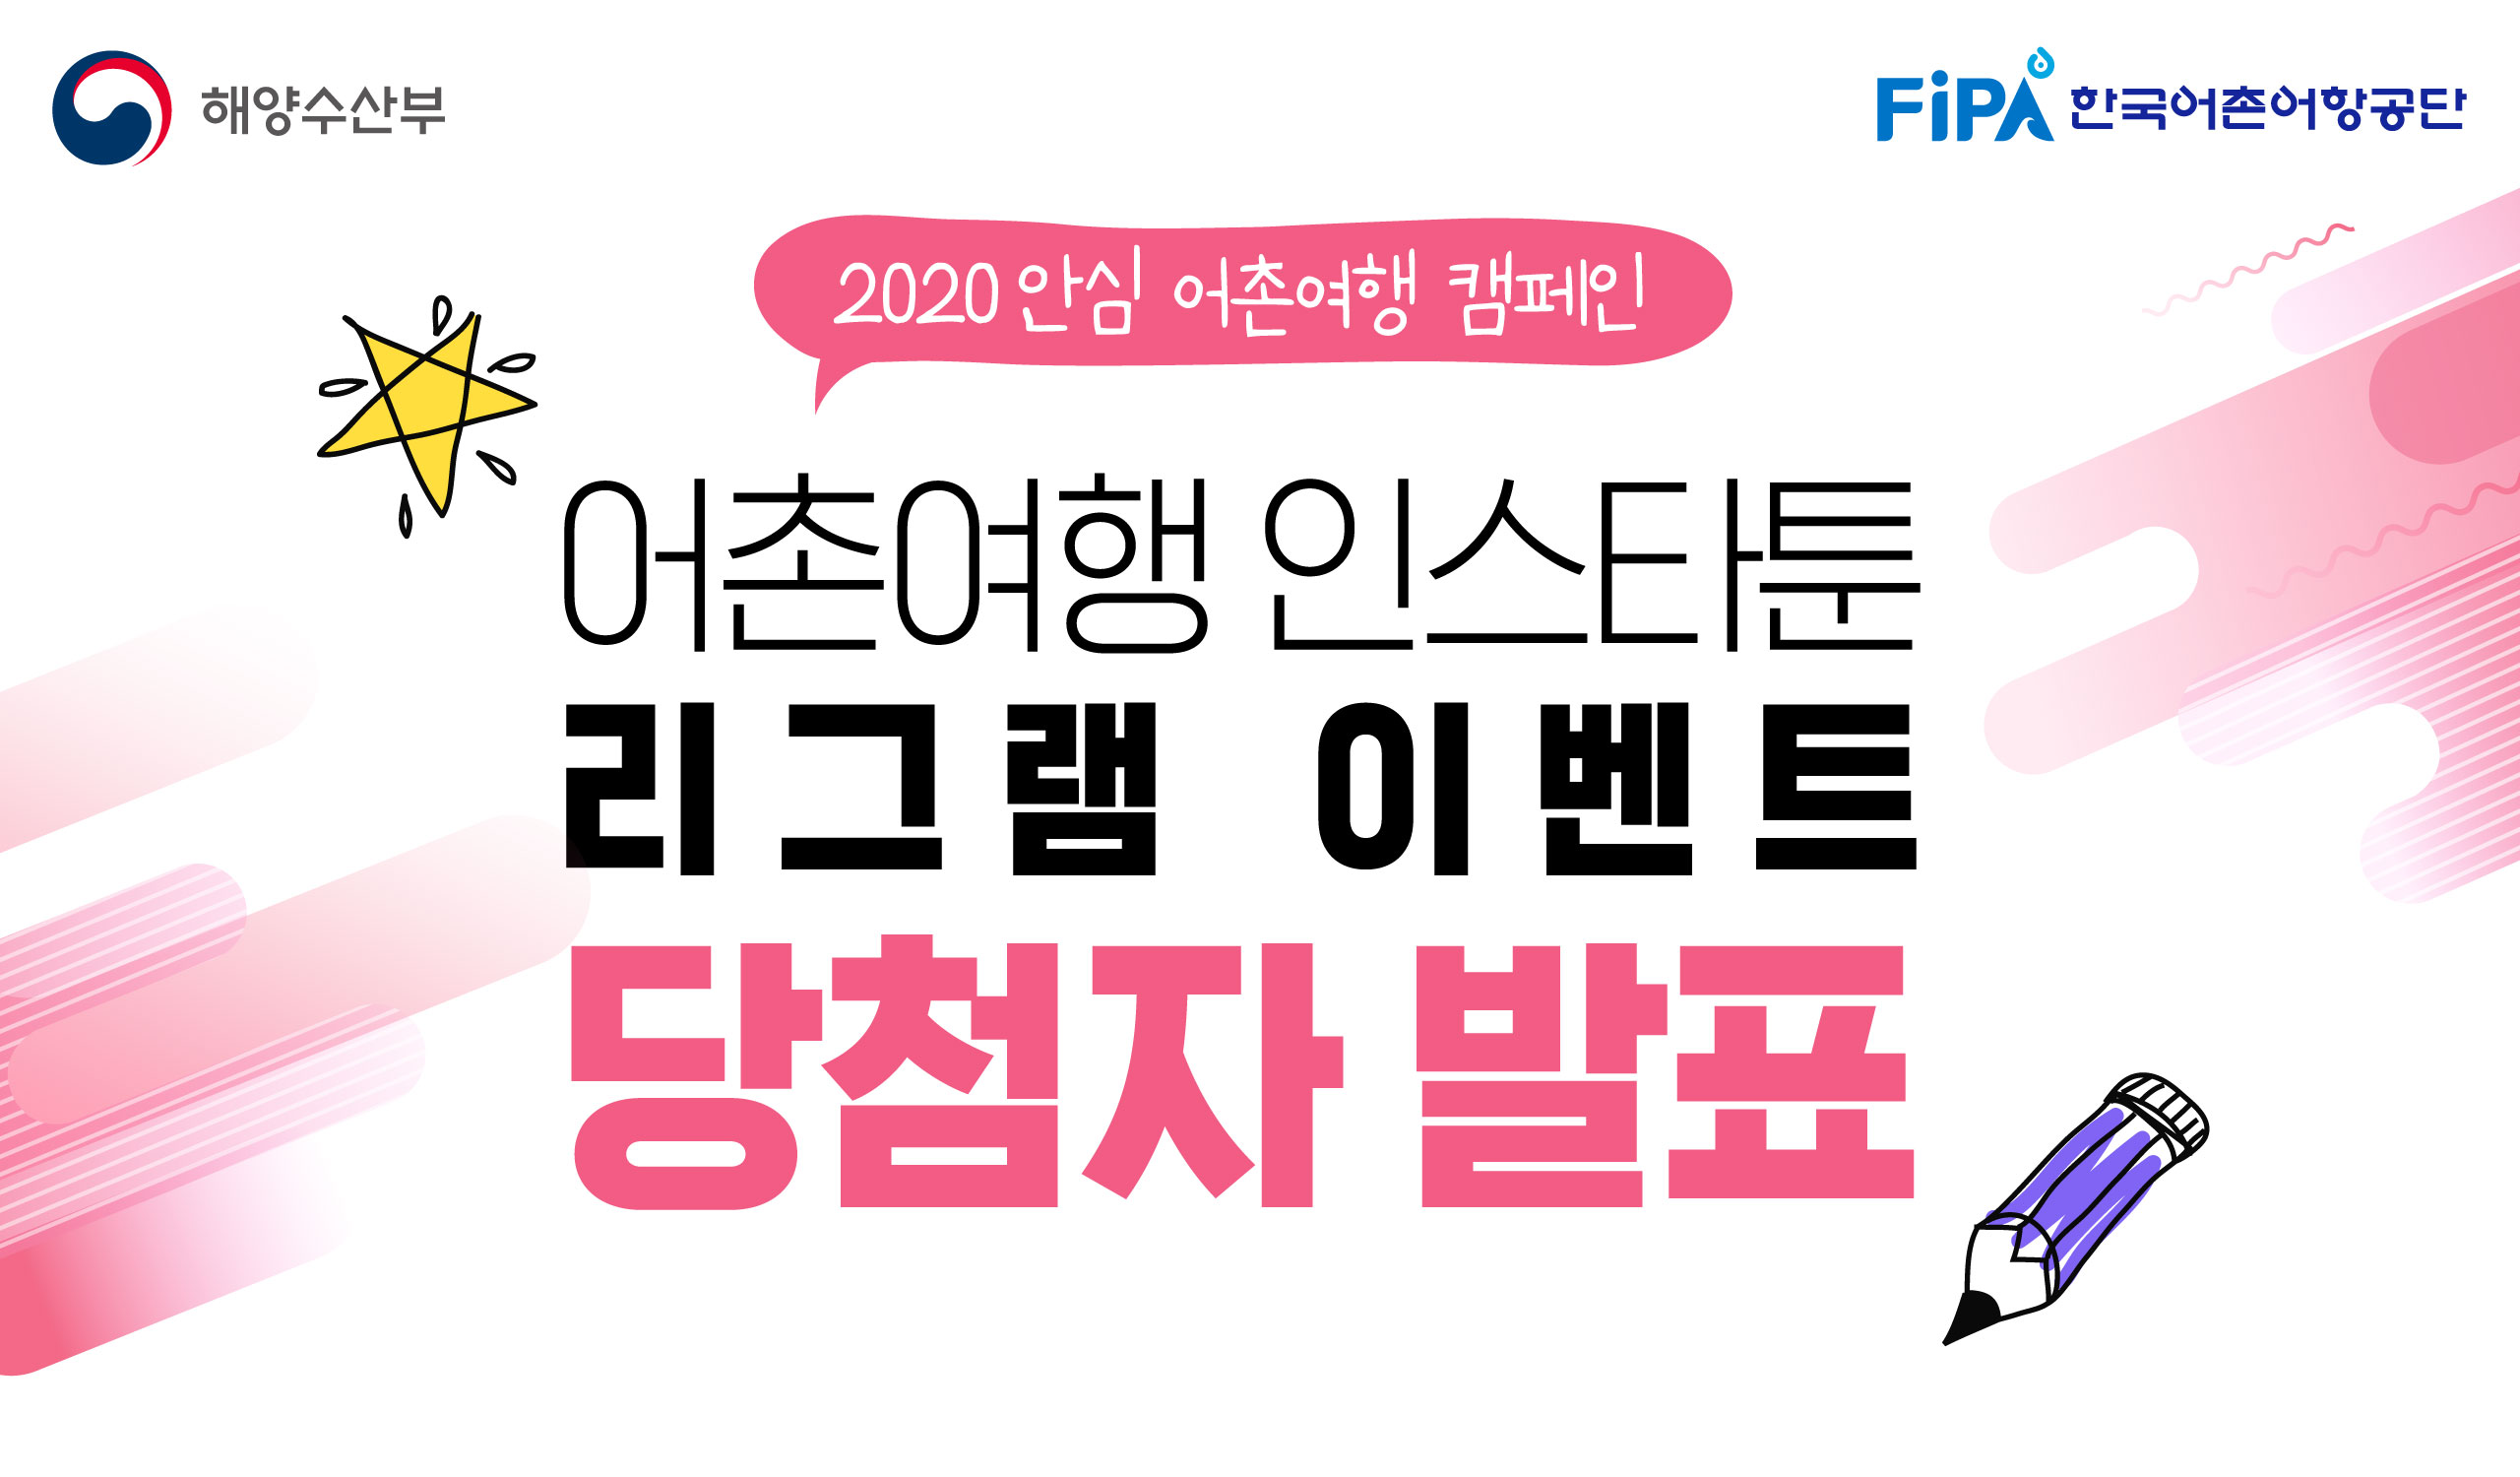 2020 안심 어촌여행 캠페인 - 인스타툰 리그램 이벤트 당첨자 발표